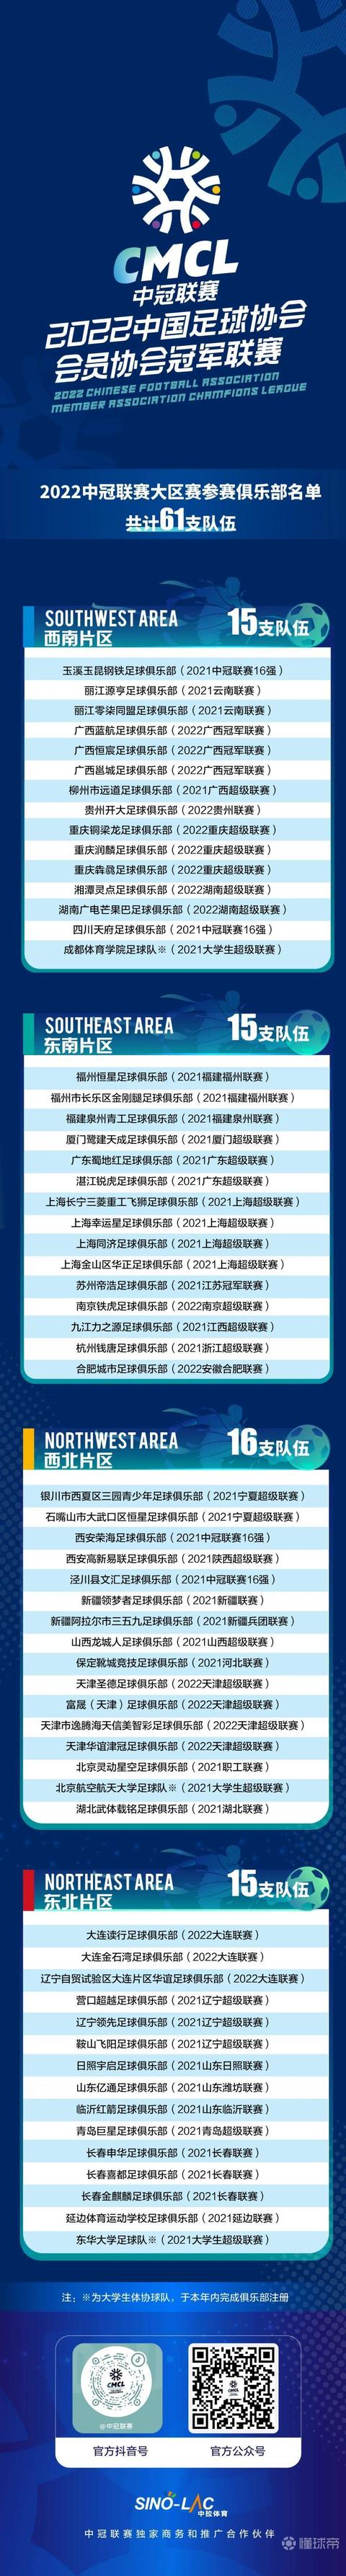 2022中冠联赛大区赛61家参赛俱乐部名单公布 南京铁虎出征东南赛区